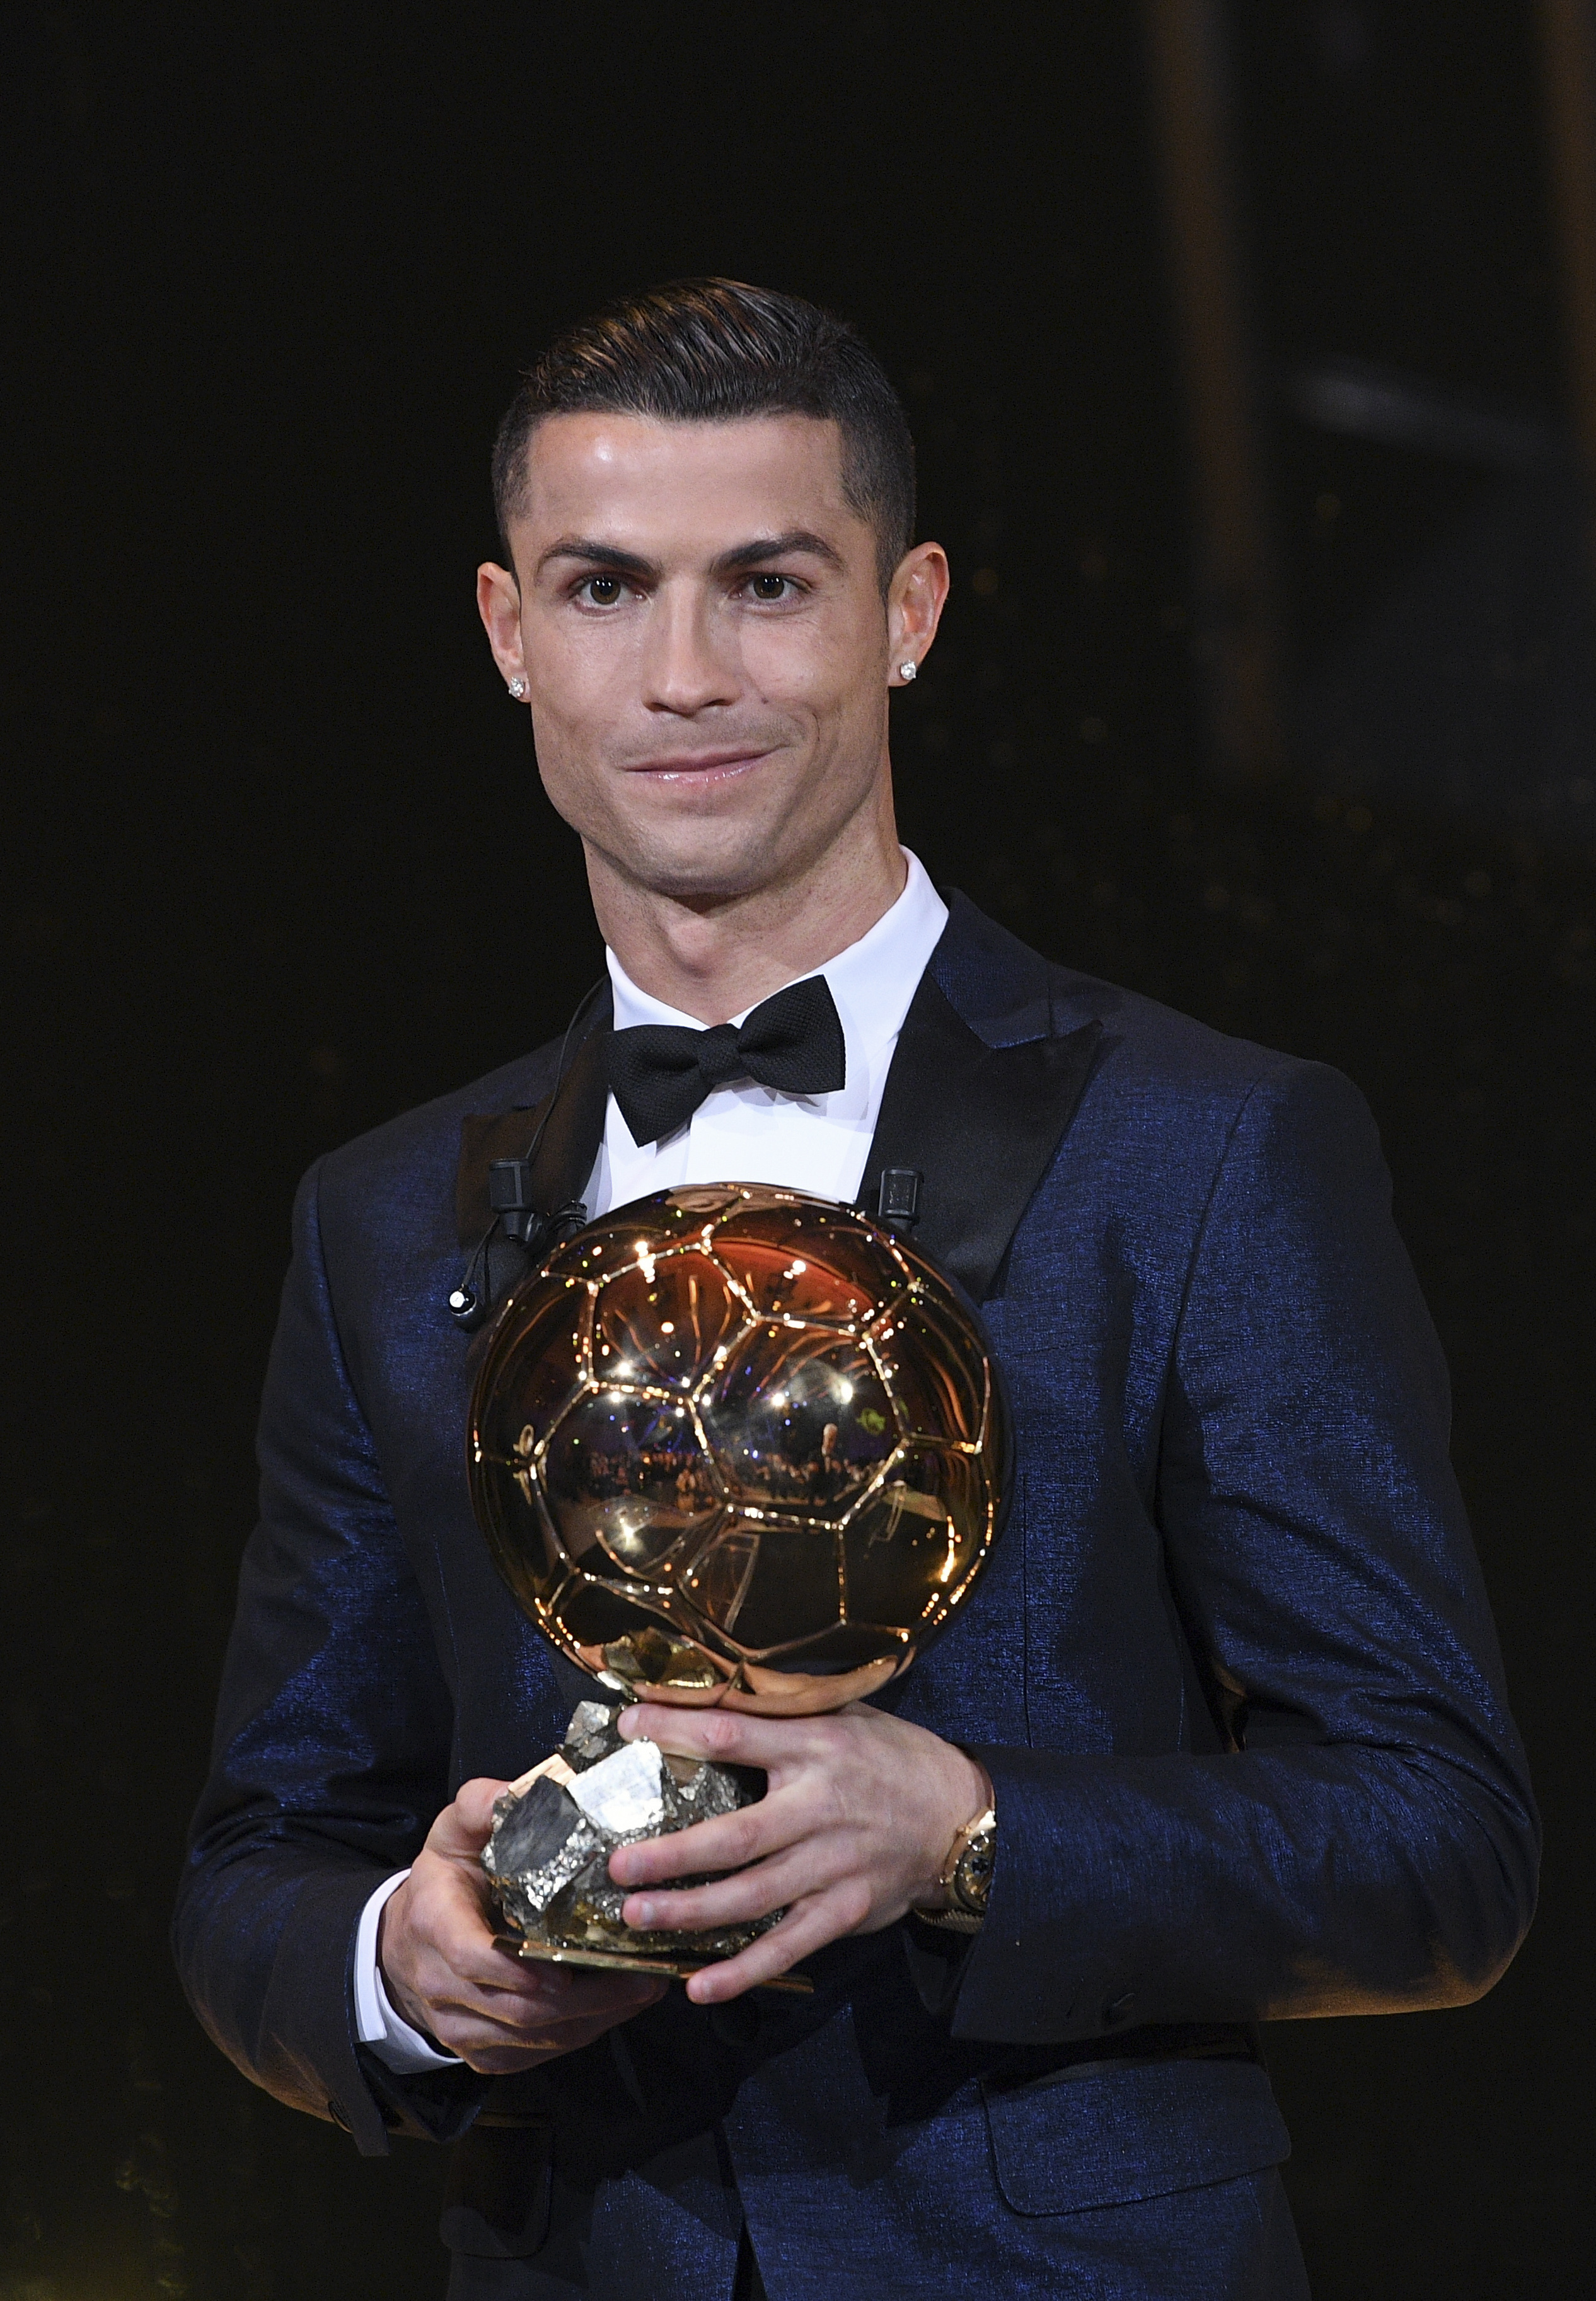 Cristiano Ronaldo in 2017